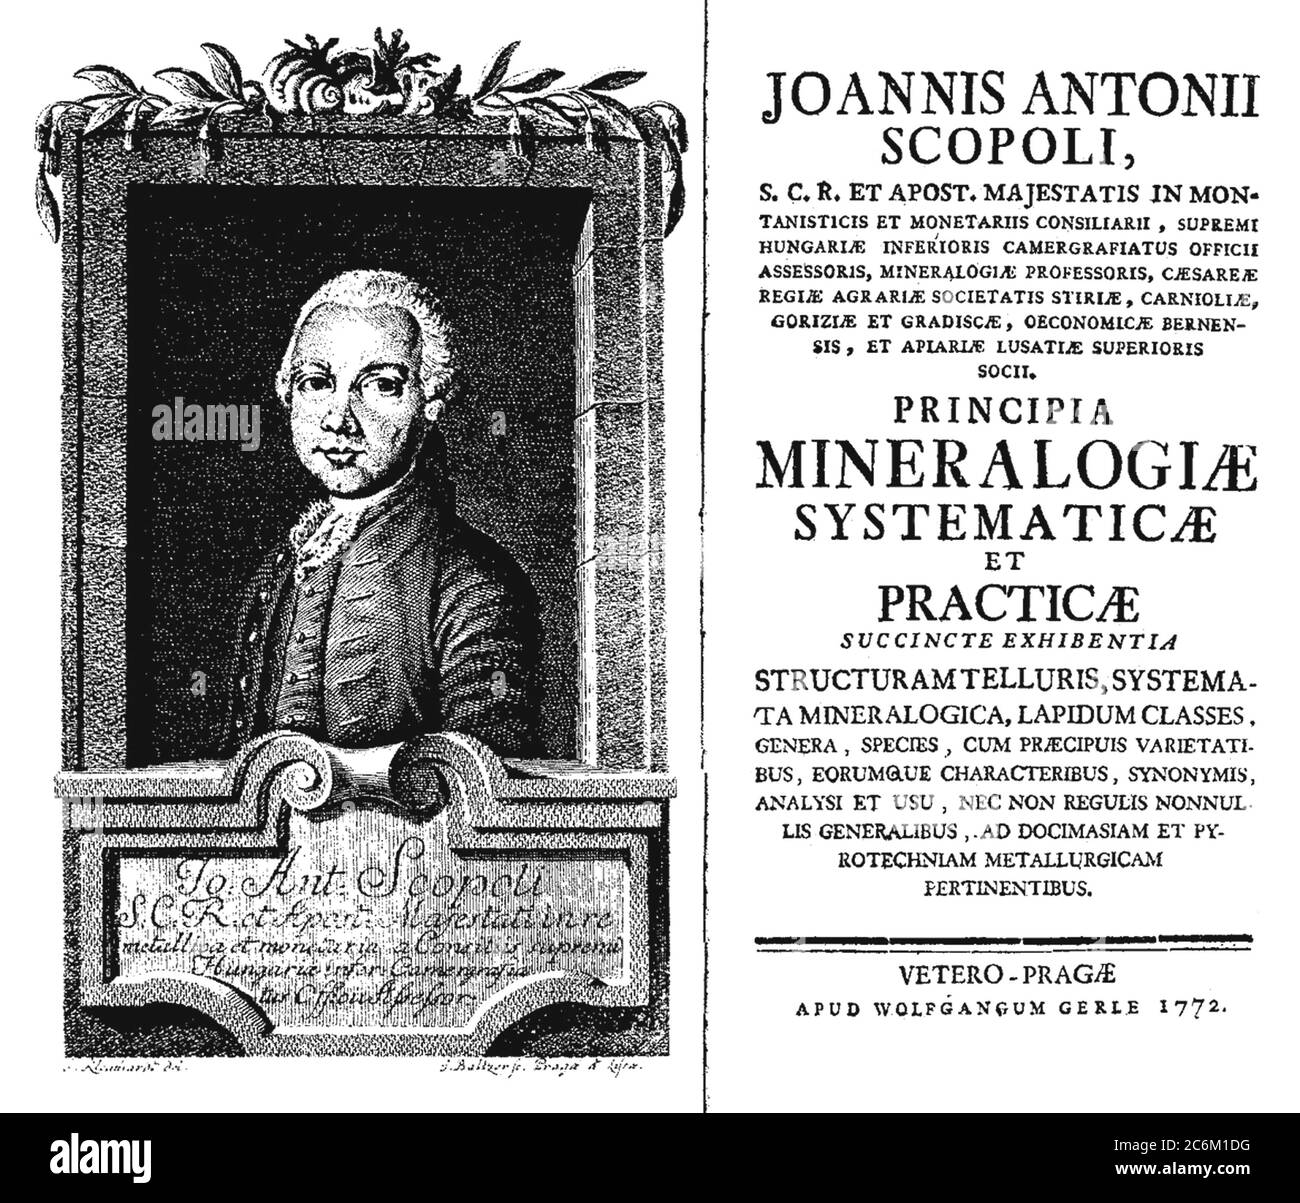 1770 ca , ITALIA : Ritratto dello scienziato e naturalista GIOVANNI ANTONIO SCOPOLI ( 1723 - 1788 ). Ritratto inciso di Jan Kleinhardt ( 1742 - 1794 ), pagina iniziale del libro PRINCIPIA MINERALOGIAE SYSTEMATICAE ET PRATICAE ( Praga , 1772 ) . - Joannes Antonius Scopoli - foto storiche - STORIA - scientifico - ritratto - ritratto - ITALIA - wig - parruca - DOTTORE - MEDICO - MEDICINA - NATURALISTA - NATURALISMO - libro --- Archivio GBB Foto Stock